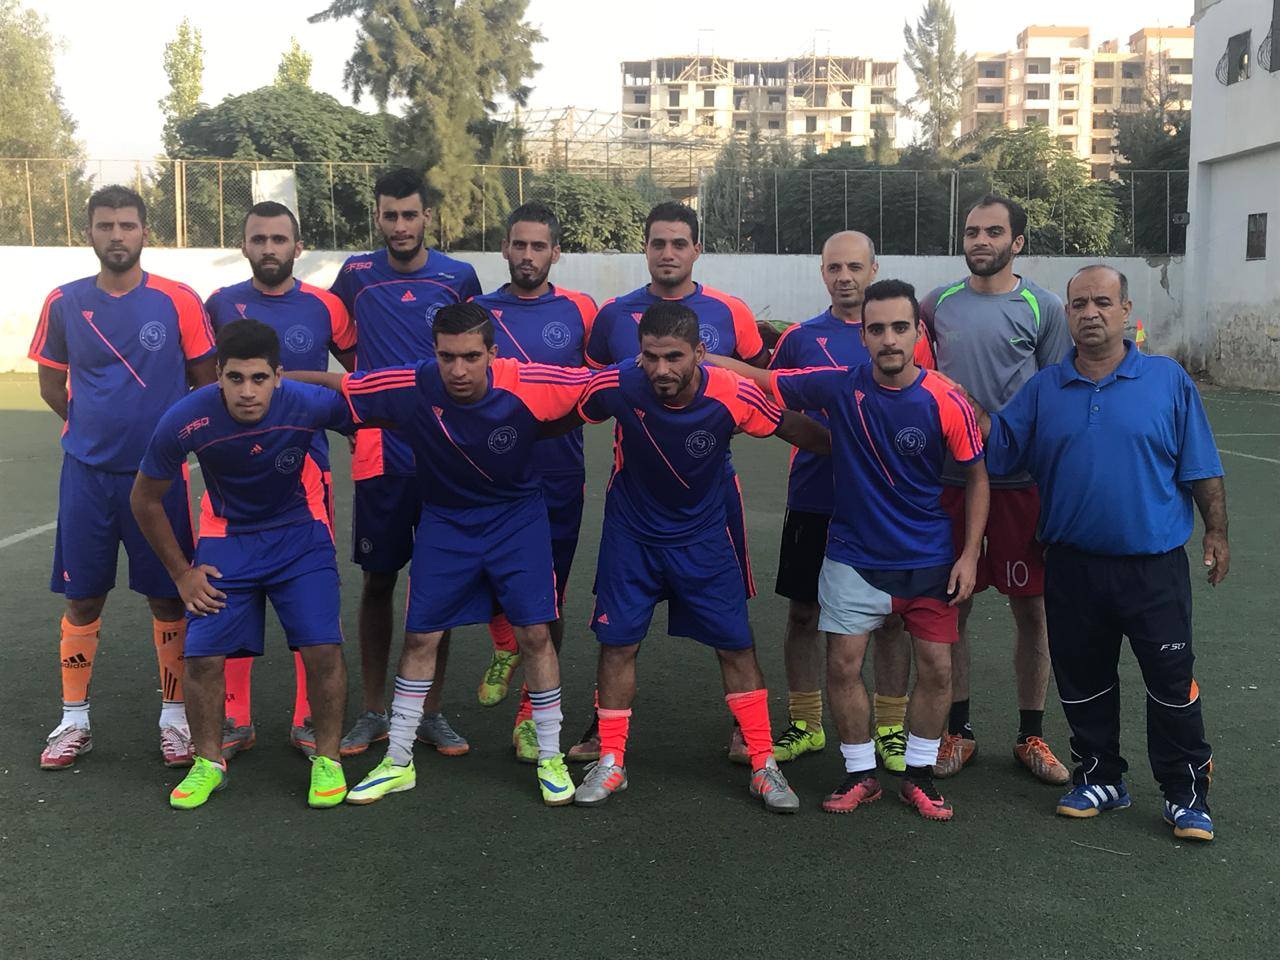 فوز نادي اليرموك على نادي الصمود 4-1 على ارض ملعب فلسطين في ميخم البداوي